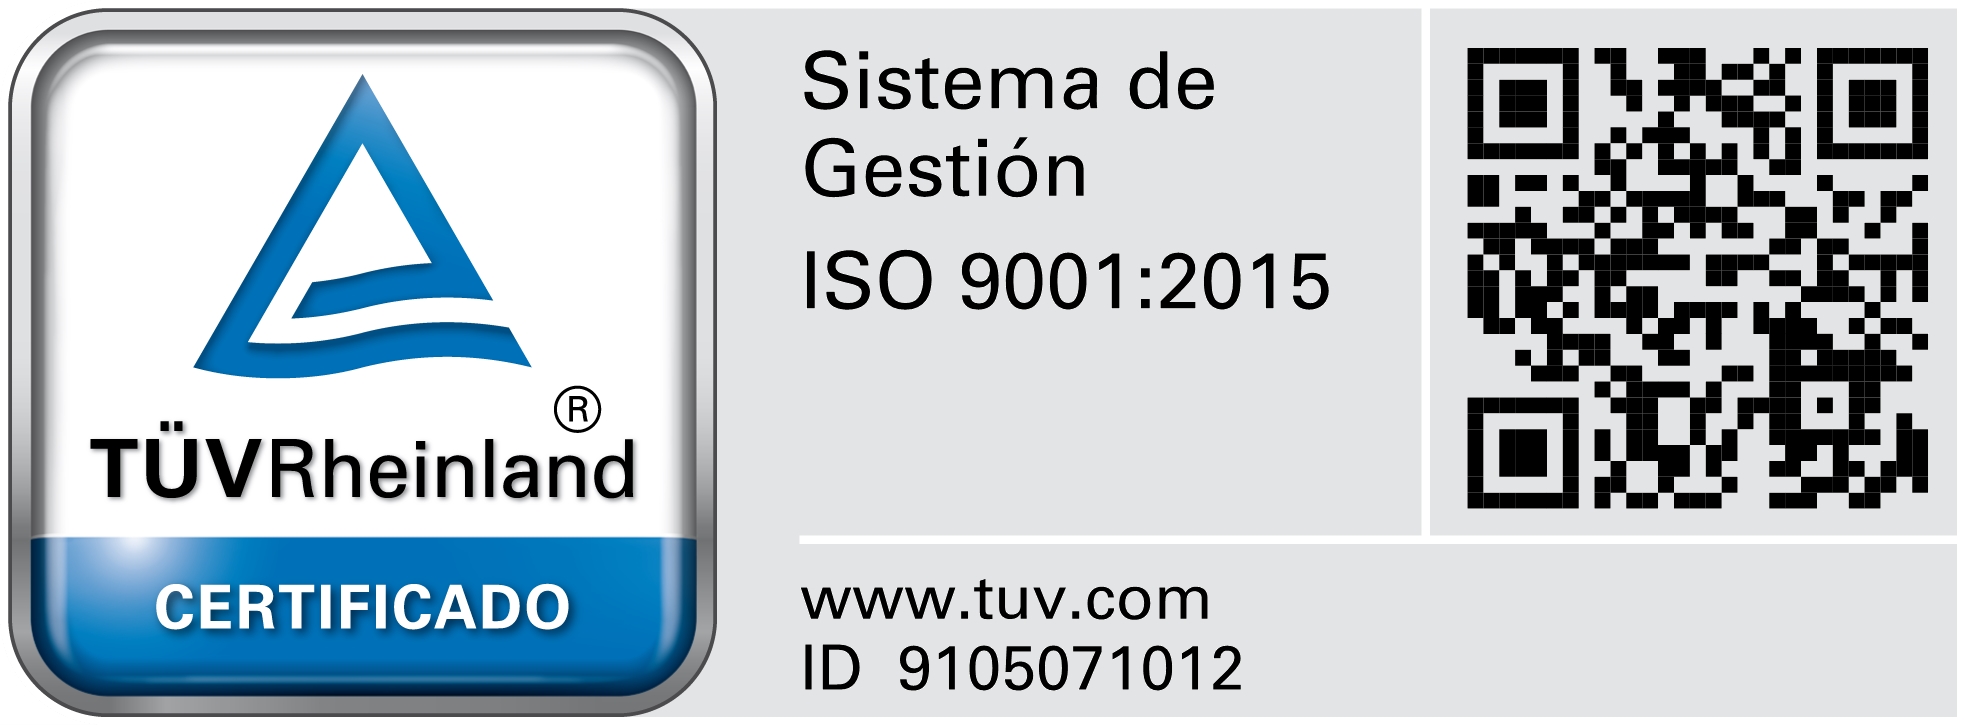 Sistema de gestión ISO 9001:2015 - Certificado TUV RheinIand ID 9105071012